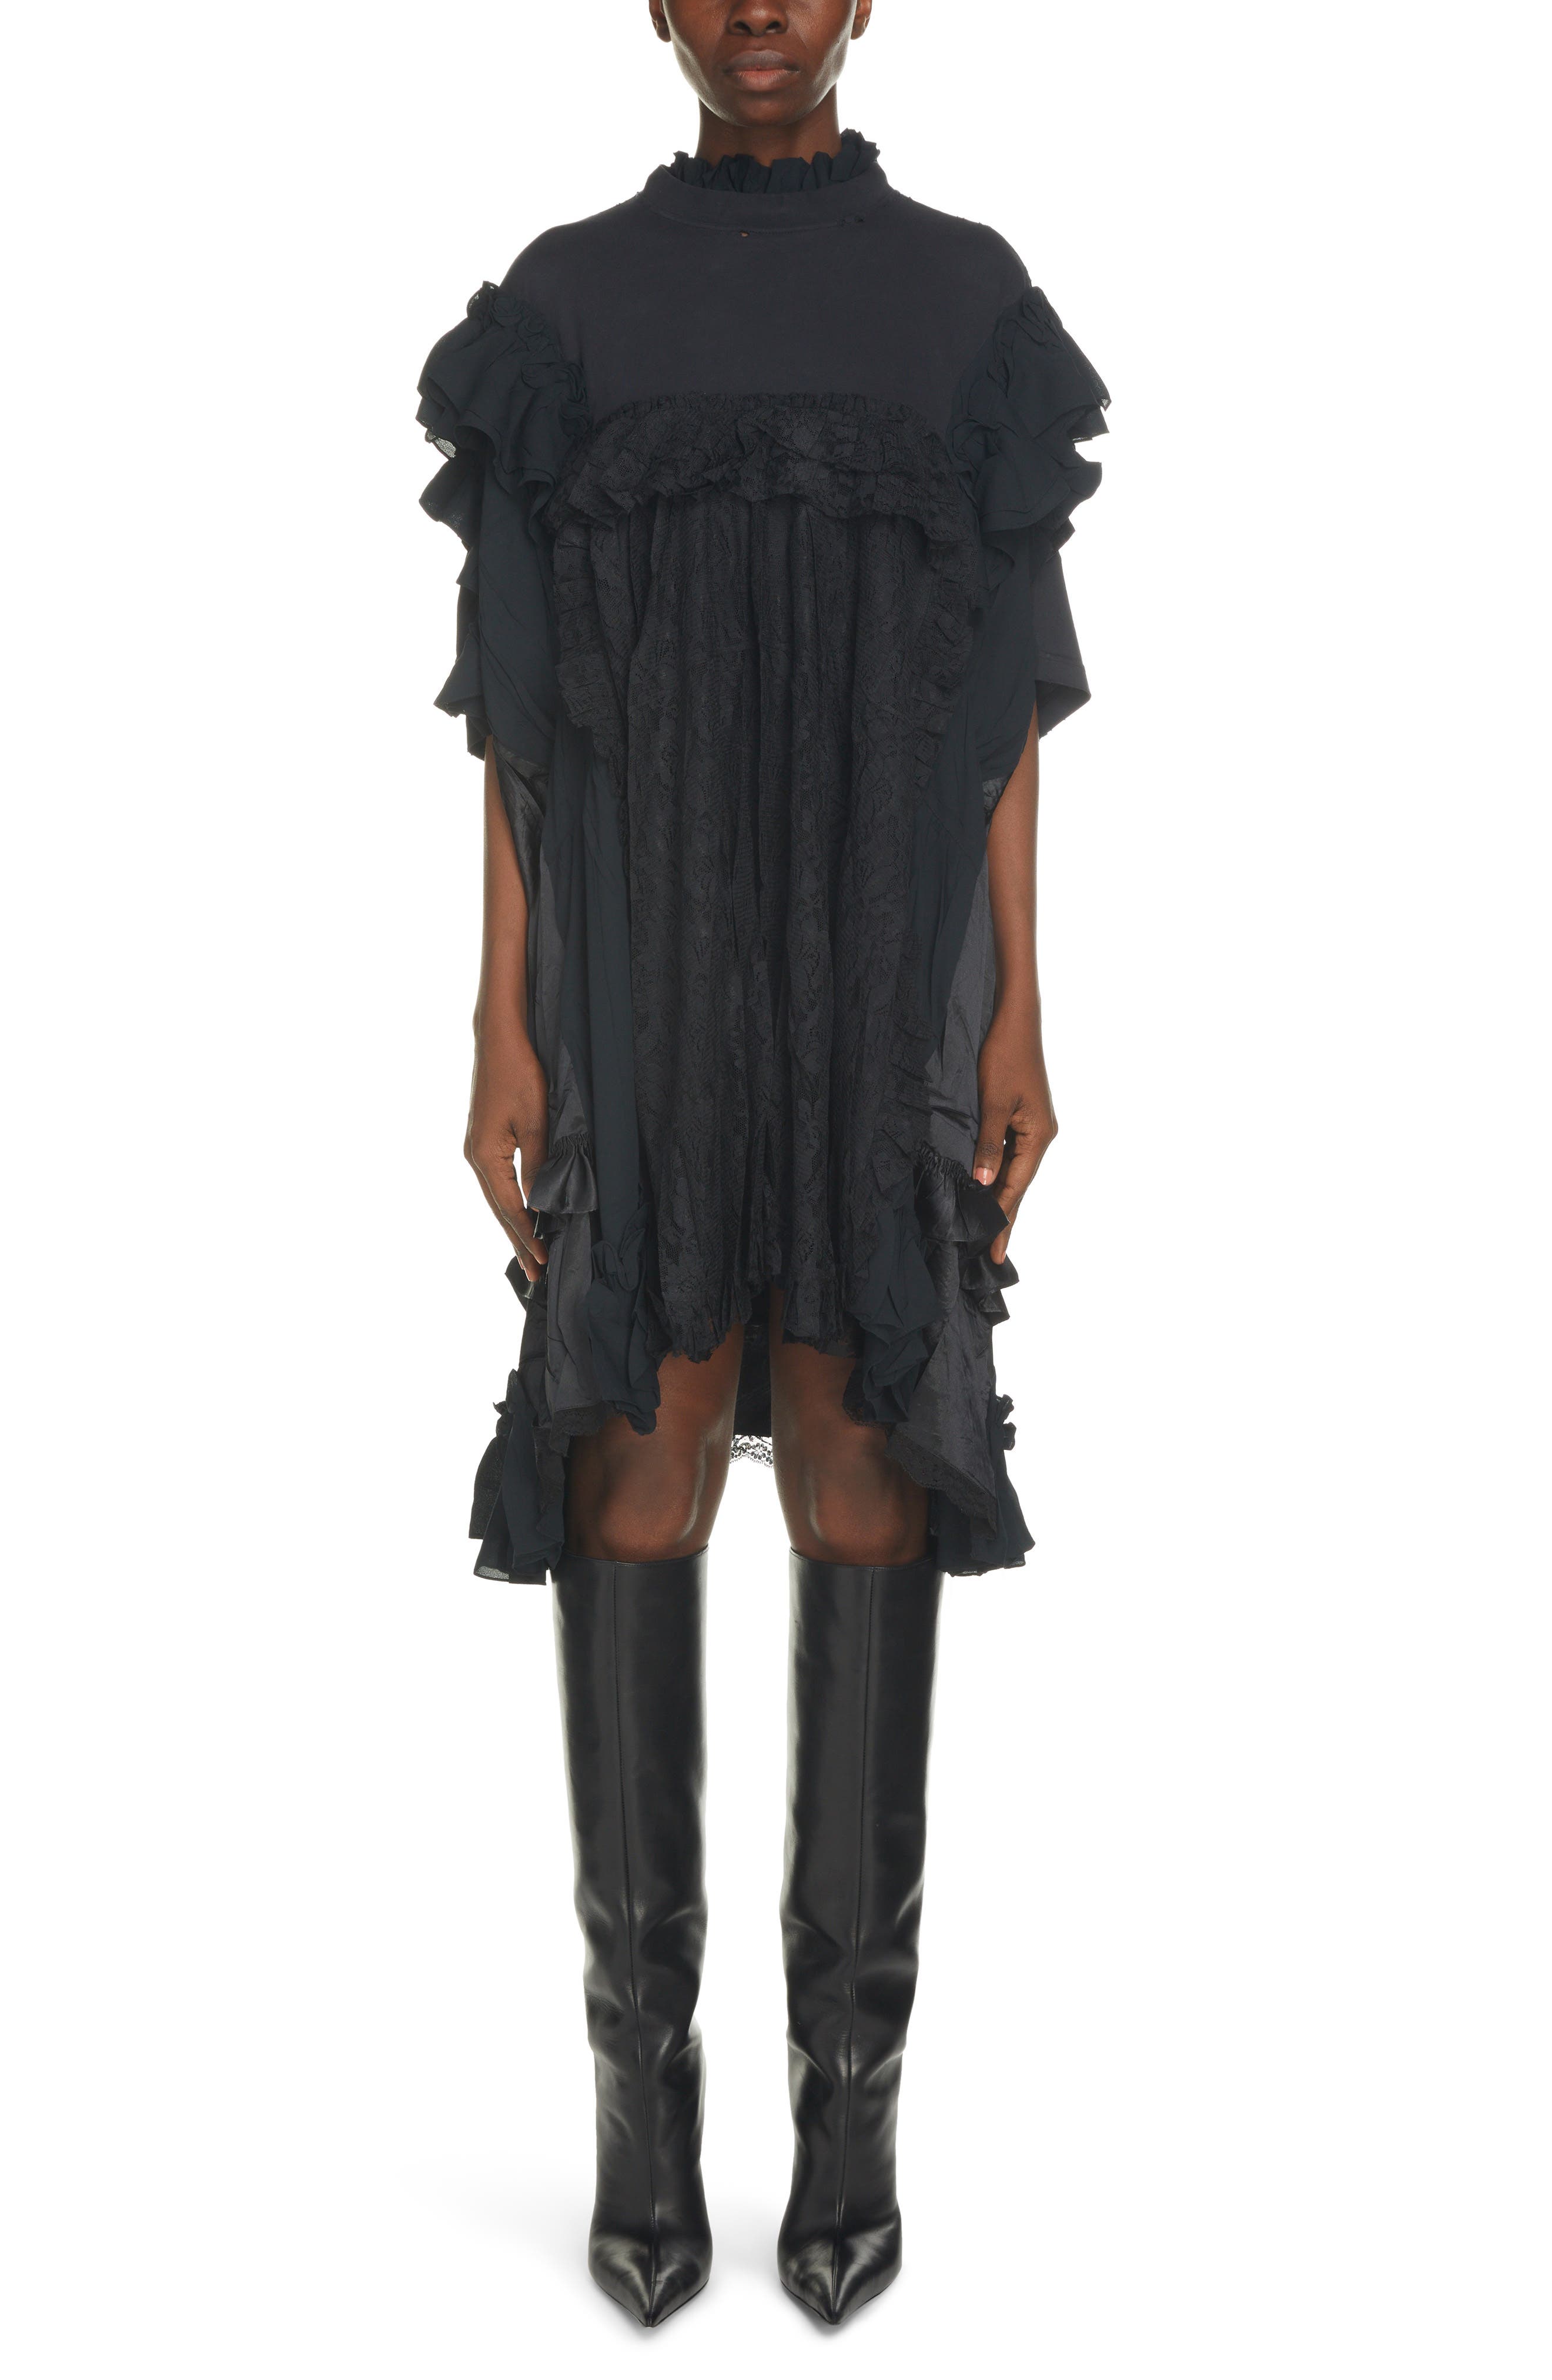 Balenciaga Mixed Media Babydoll Dress in Black at Nordstrom, Size 8 Us